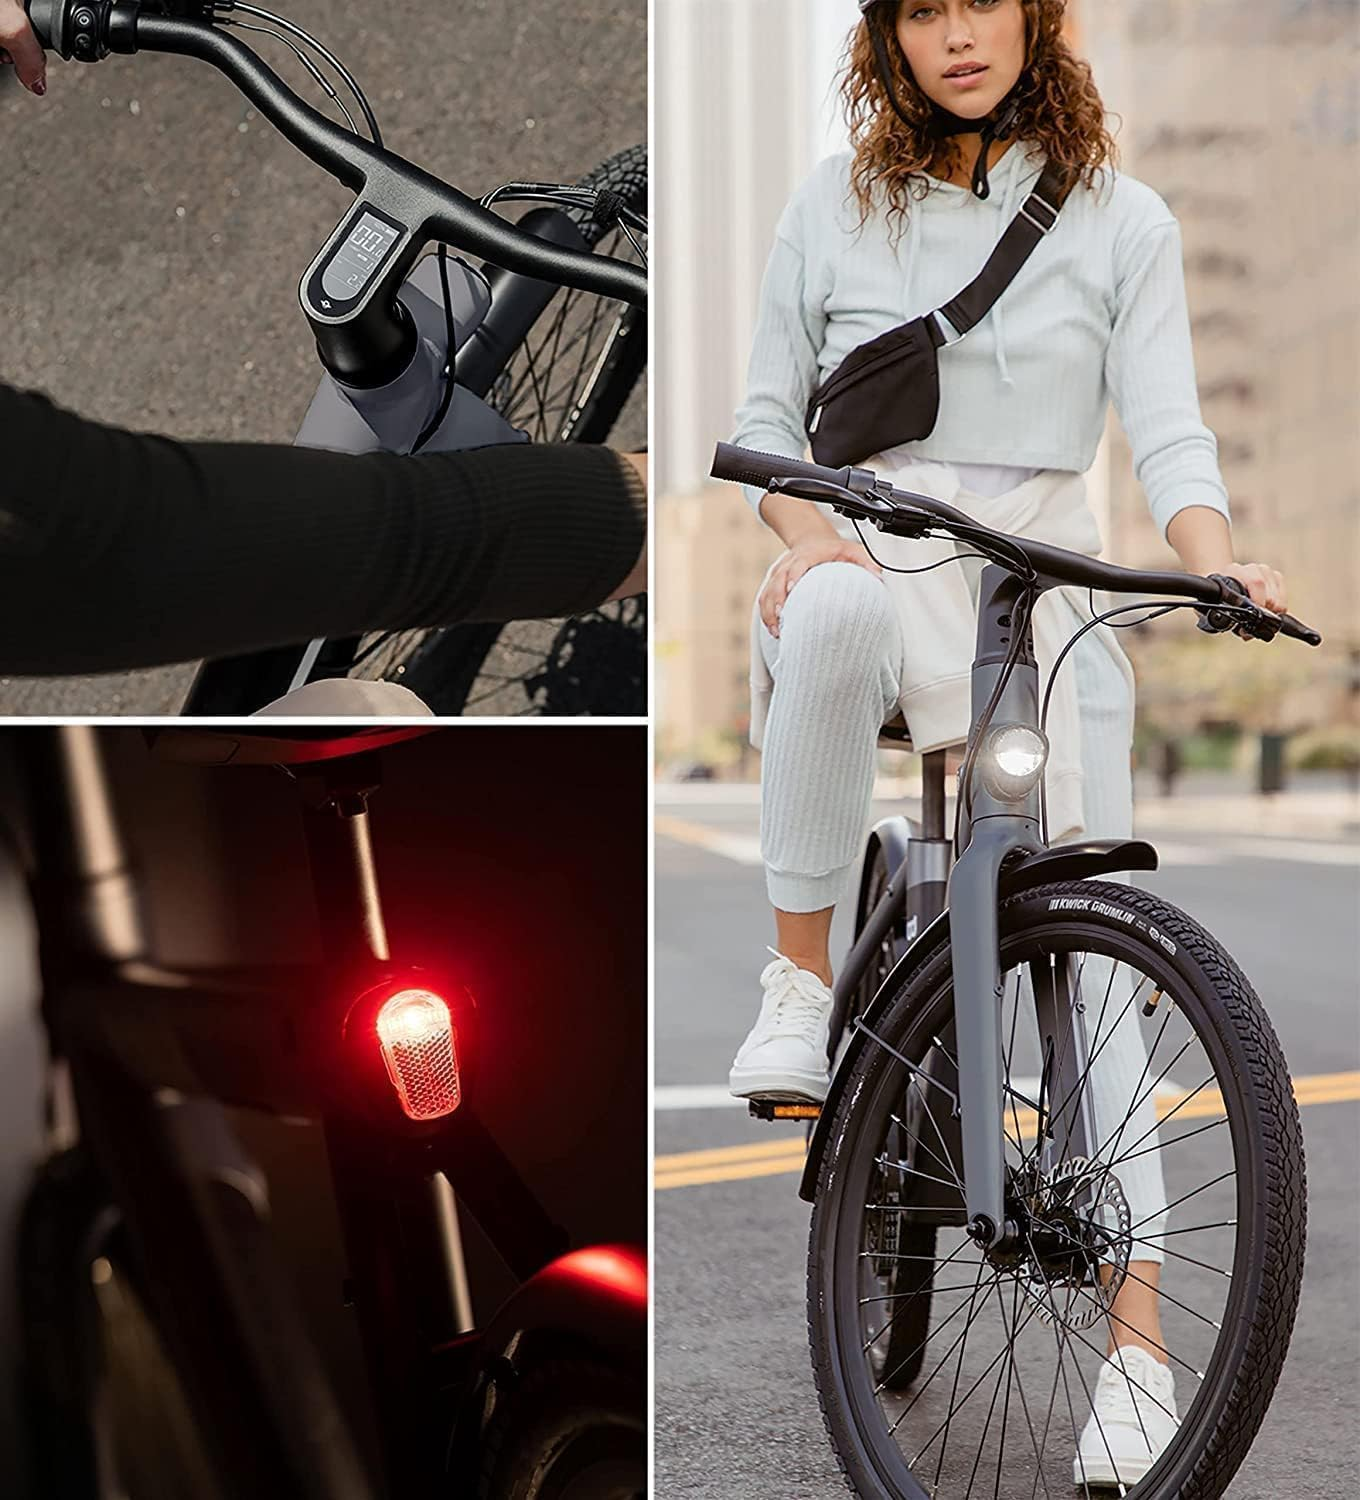 APP, LED Schwarz) Urban Connect Zoll, Diebstahlschutz für 150-180CM Lampe C6F 26 (Laufradgröße: Citybike Mit xBird City-Bike Unisex-Rad, StVZO-zugelassene SACHSENRAD